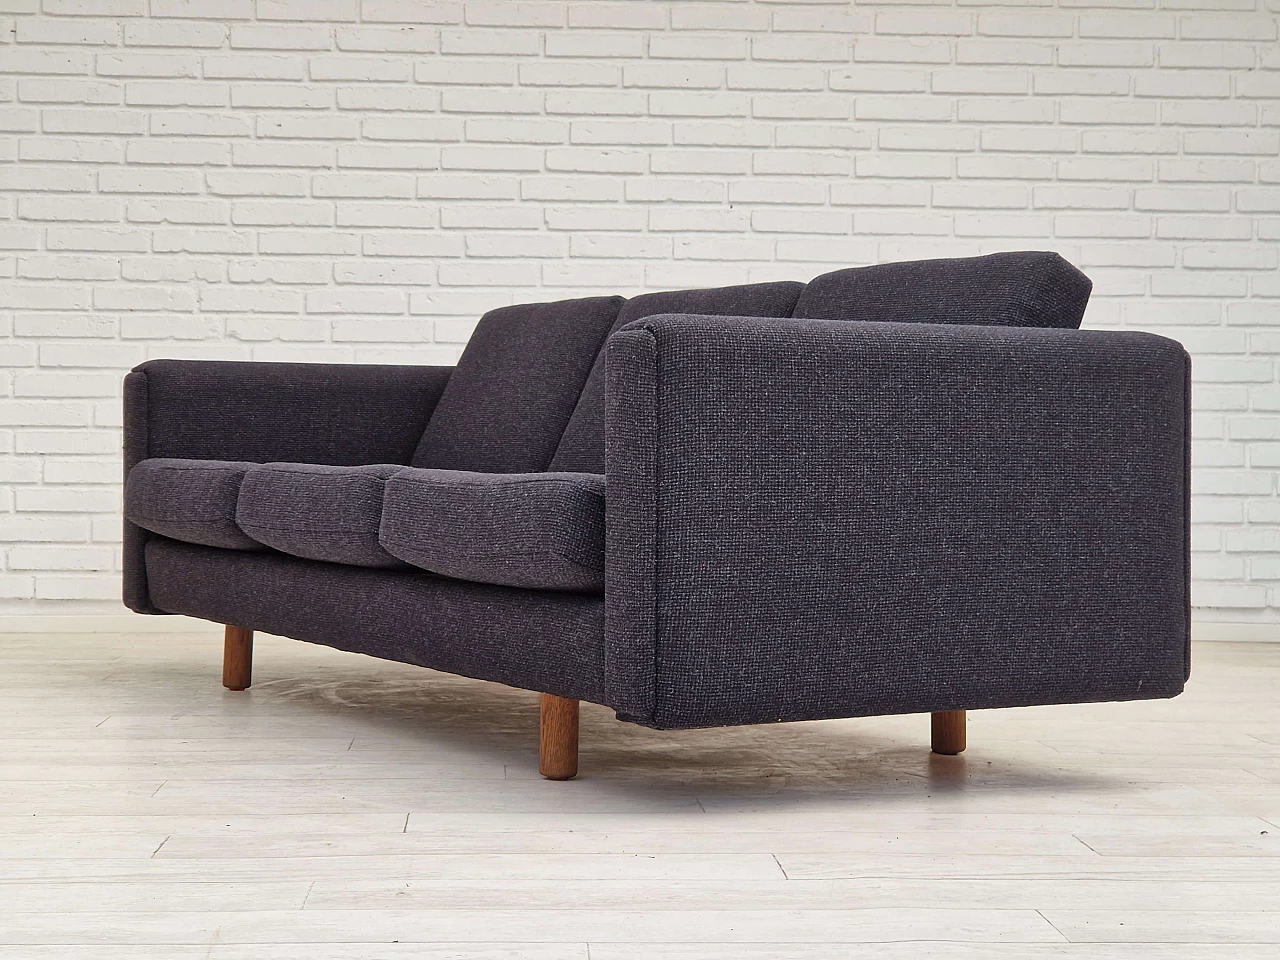 GE300 sofa by Hans J. Wegner for Getama, 1960s 1